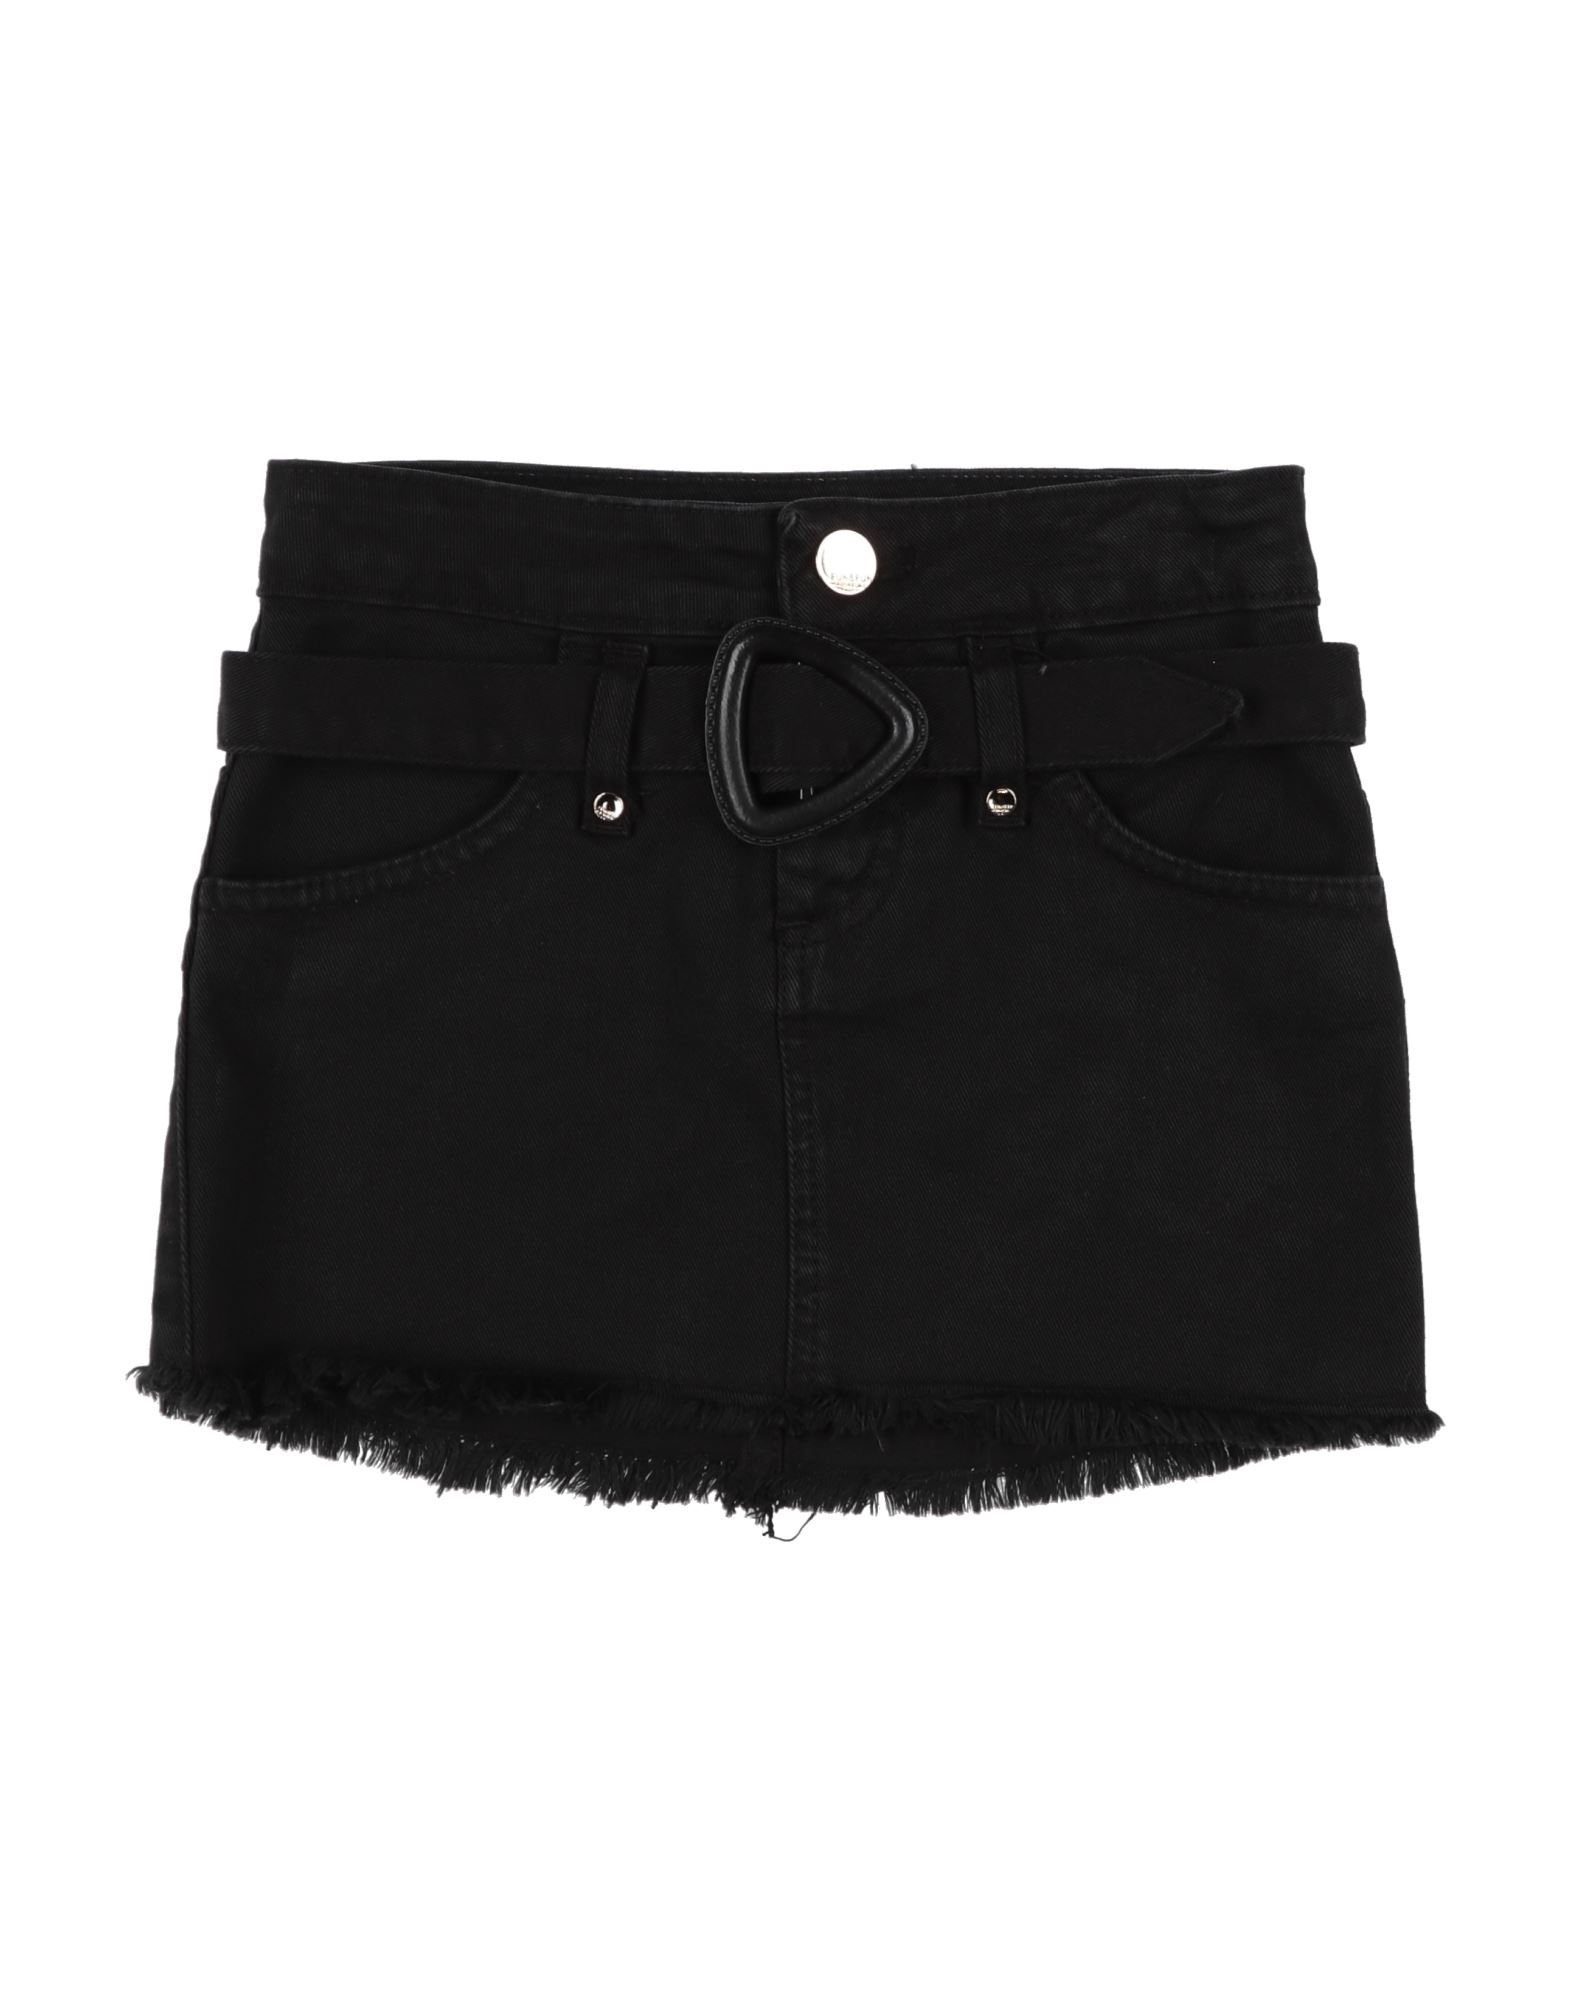 Fun & Fun Kids'  Toddler Girl Denim Skirt Black Size 7 Cotton, Elastane, Polyester